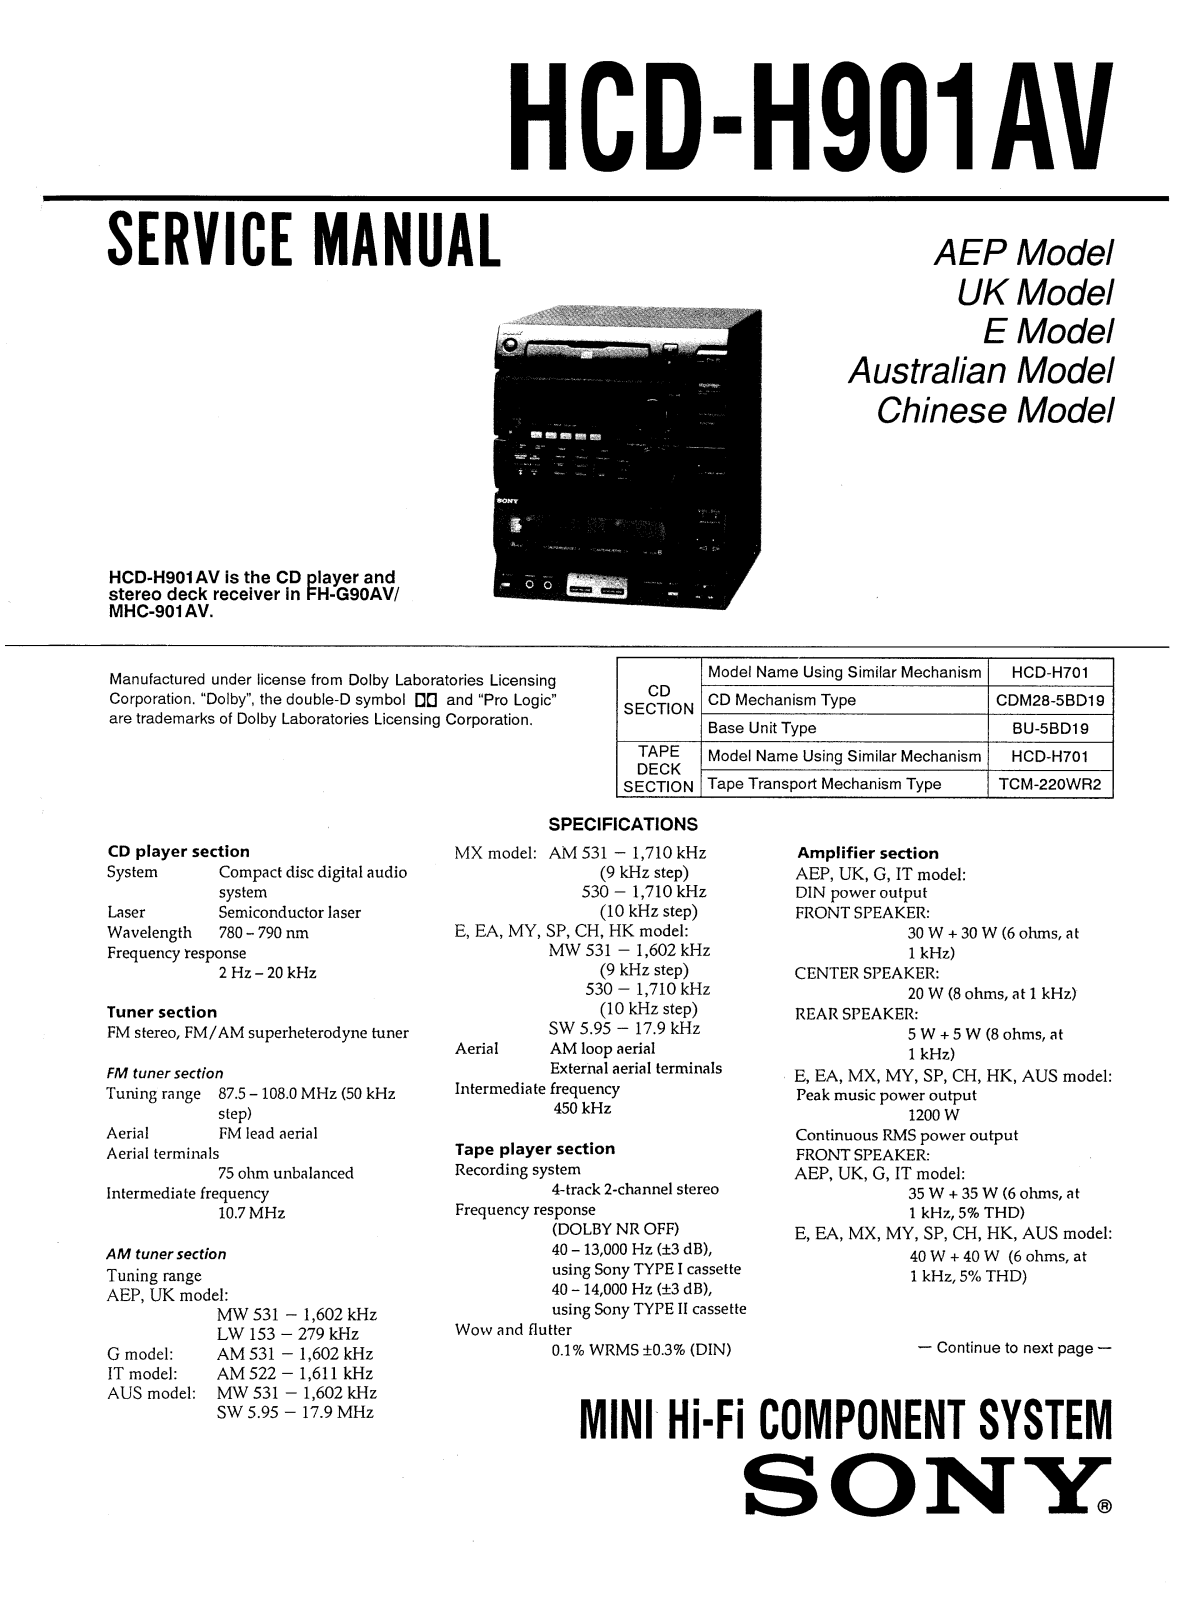 Sony HCDH-901-AV Service manual